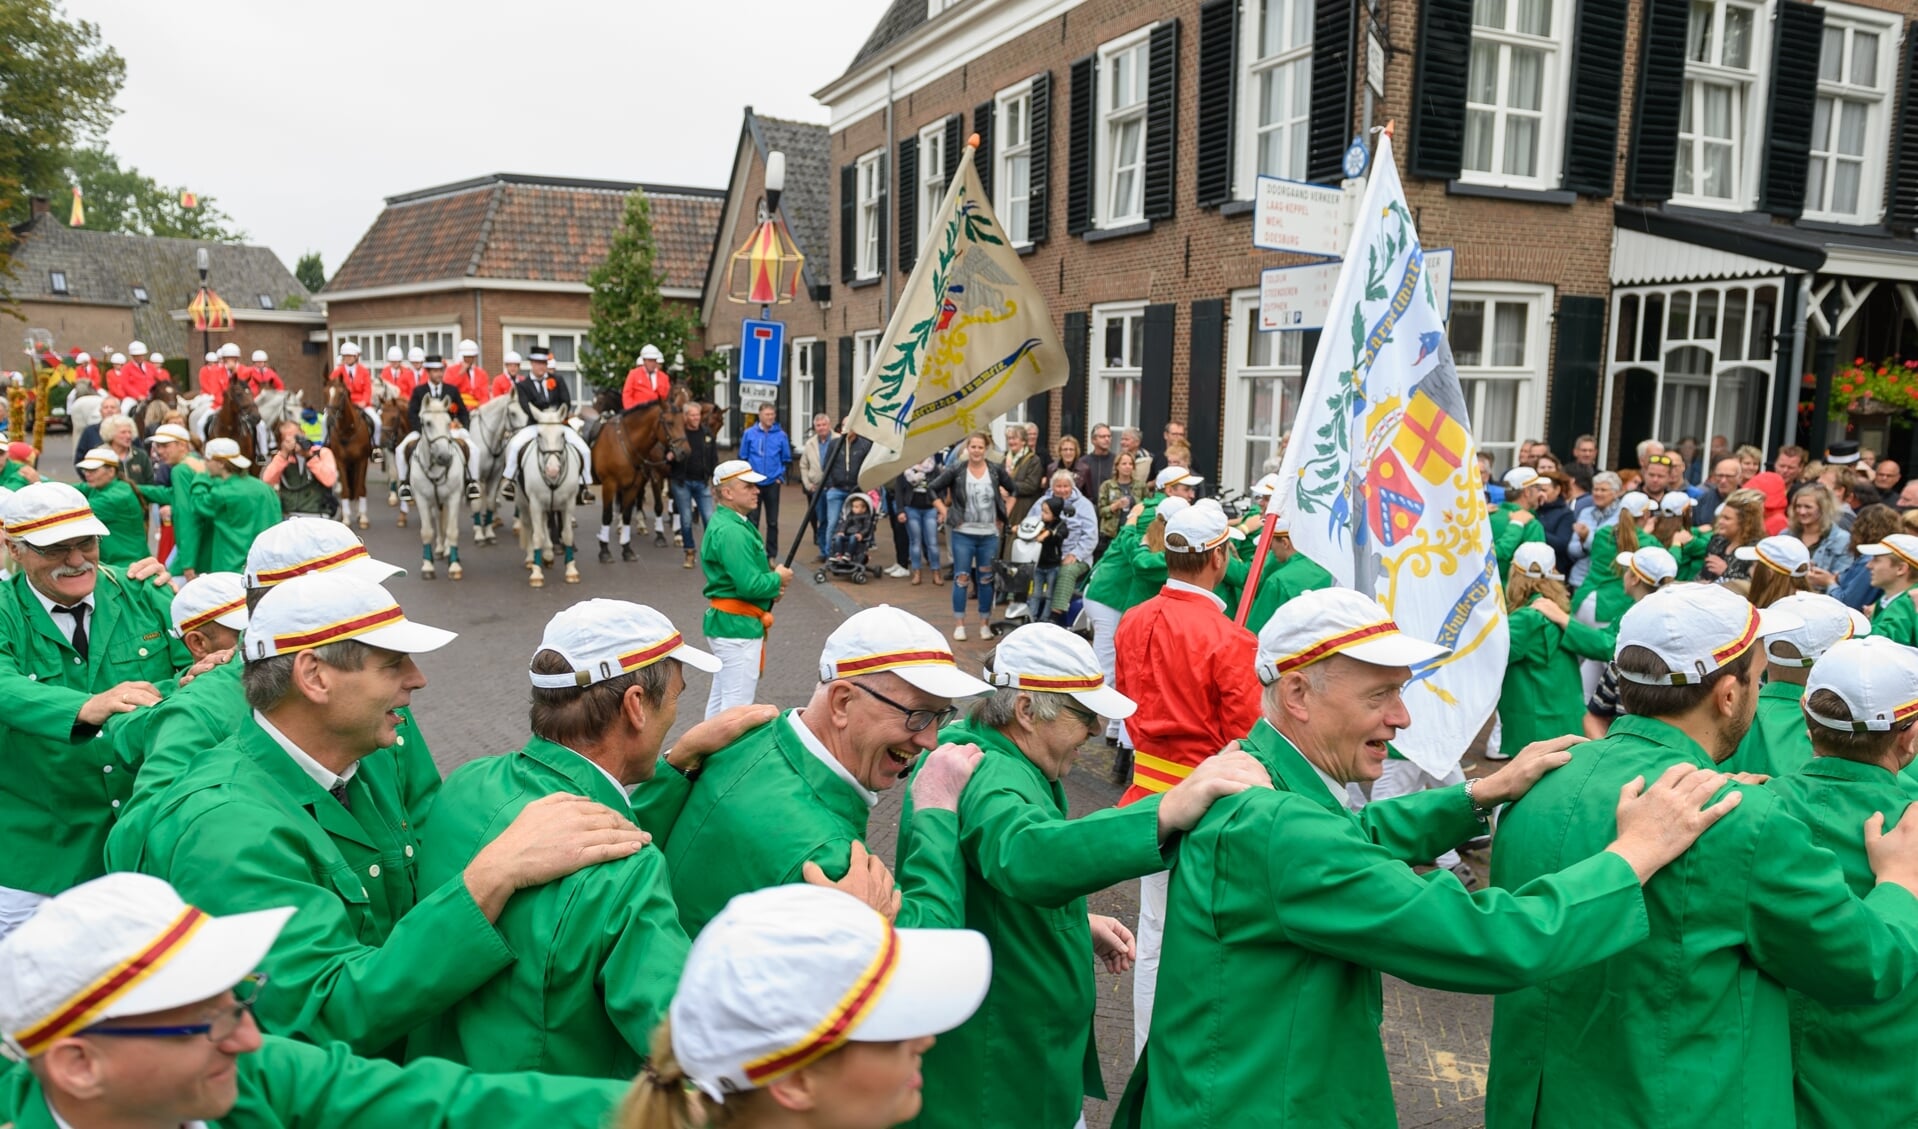 Muziekvereniging, ruiters, schutters en publiek bij de Gouden Karper tijdens het volksfeest in Hummelo. Foto: Achterhoekfoto.nl/Henk den Brok